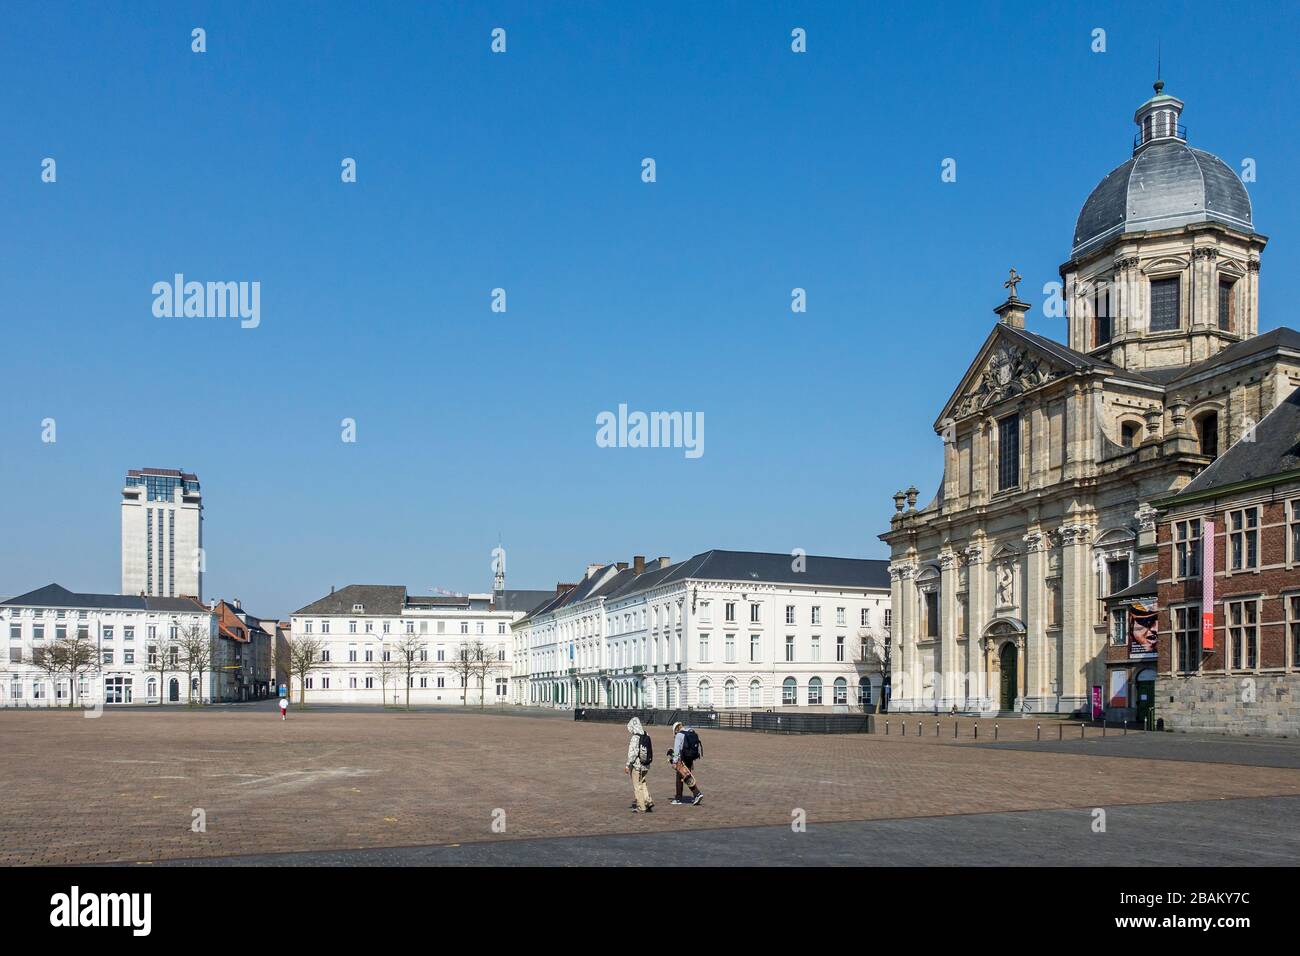 Der Petersplatz ist fast vollständig verlassen, leer aufgrund der COVID-19 von 2020/Coronavirus/Corona-Virus-Pandemie in der flämischen Stadt Gent, Belgien Stockfoto